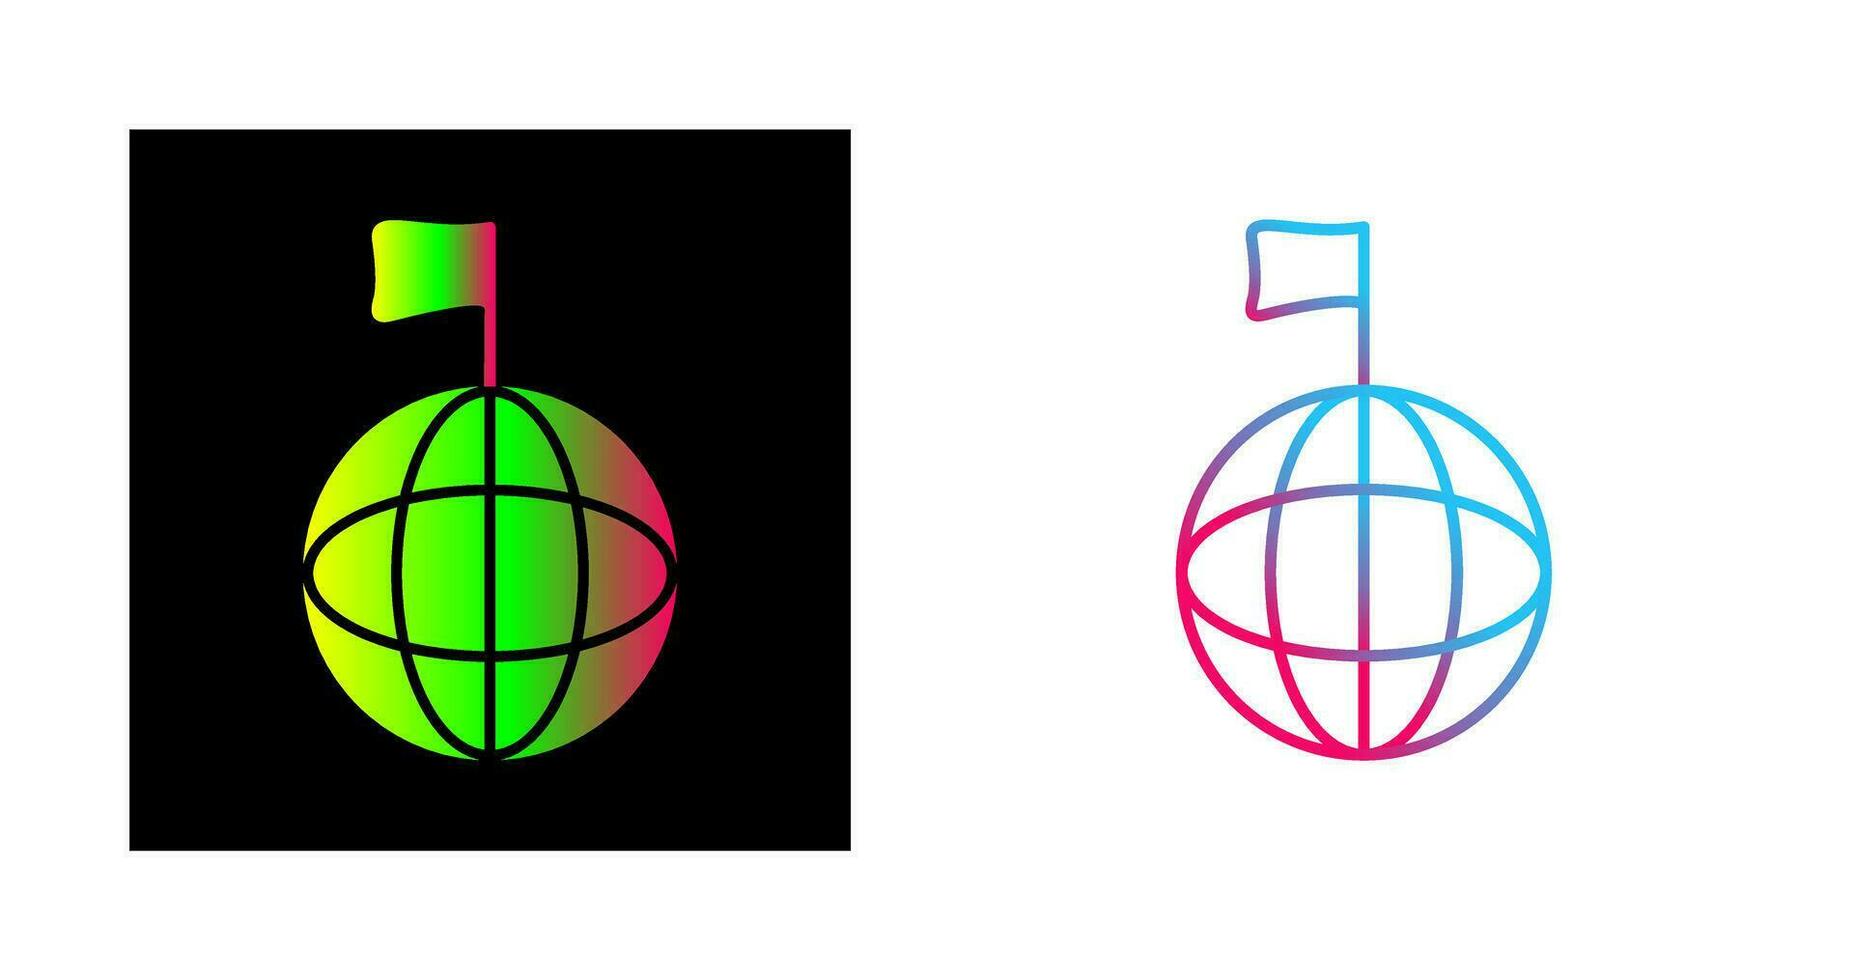 Unique Global Signals Vector Icon